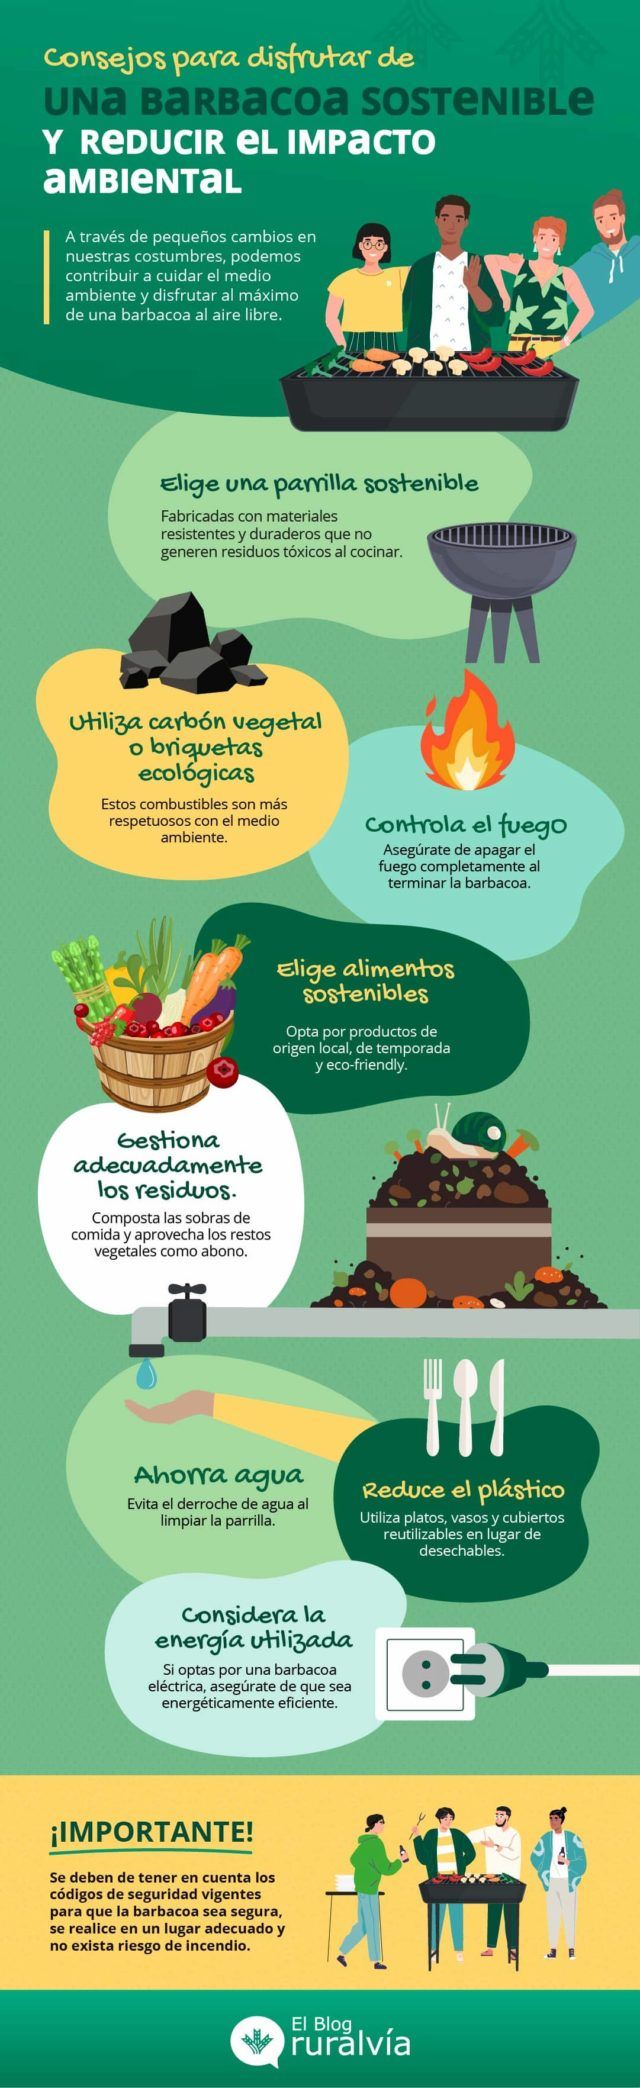 18AGOS_Consejos-barbacoa-sostenible-infografia-640x2088